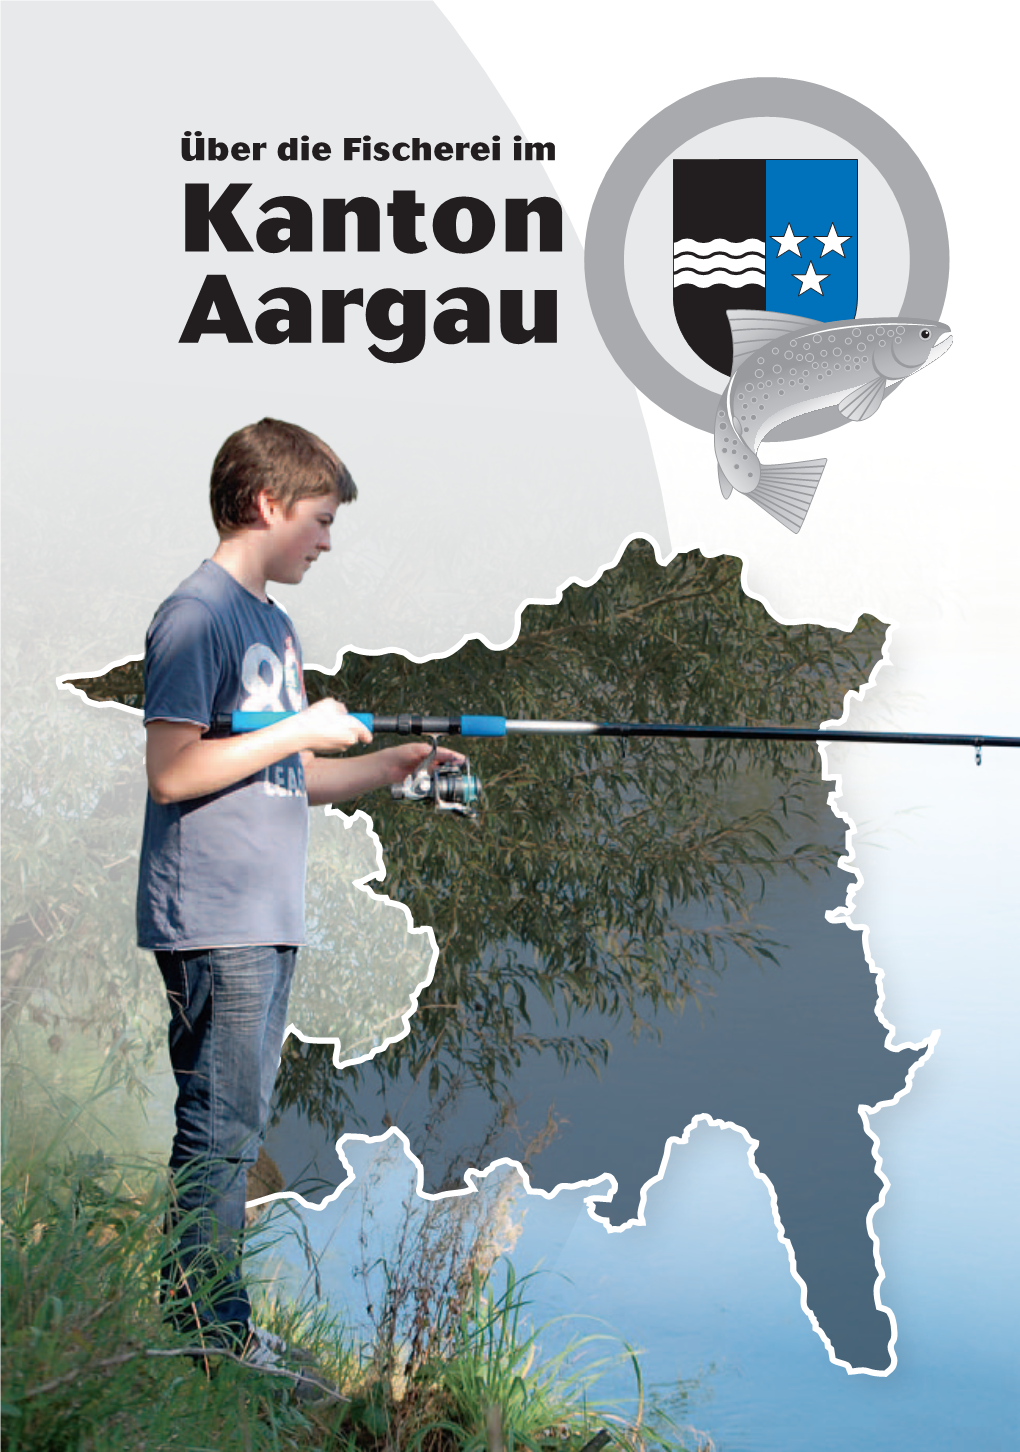 Die Fischerei Im Kanton Aargau Die Surb Gehört Zur Aargauer Forellenregion